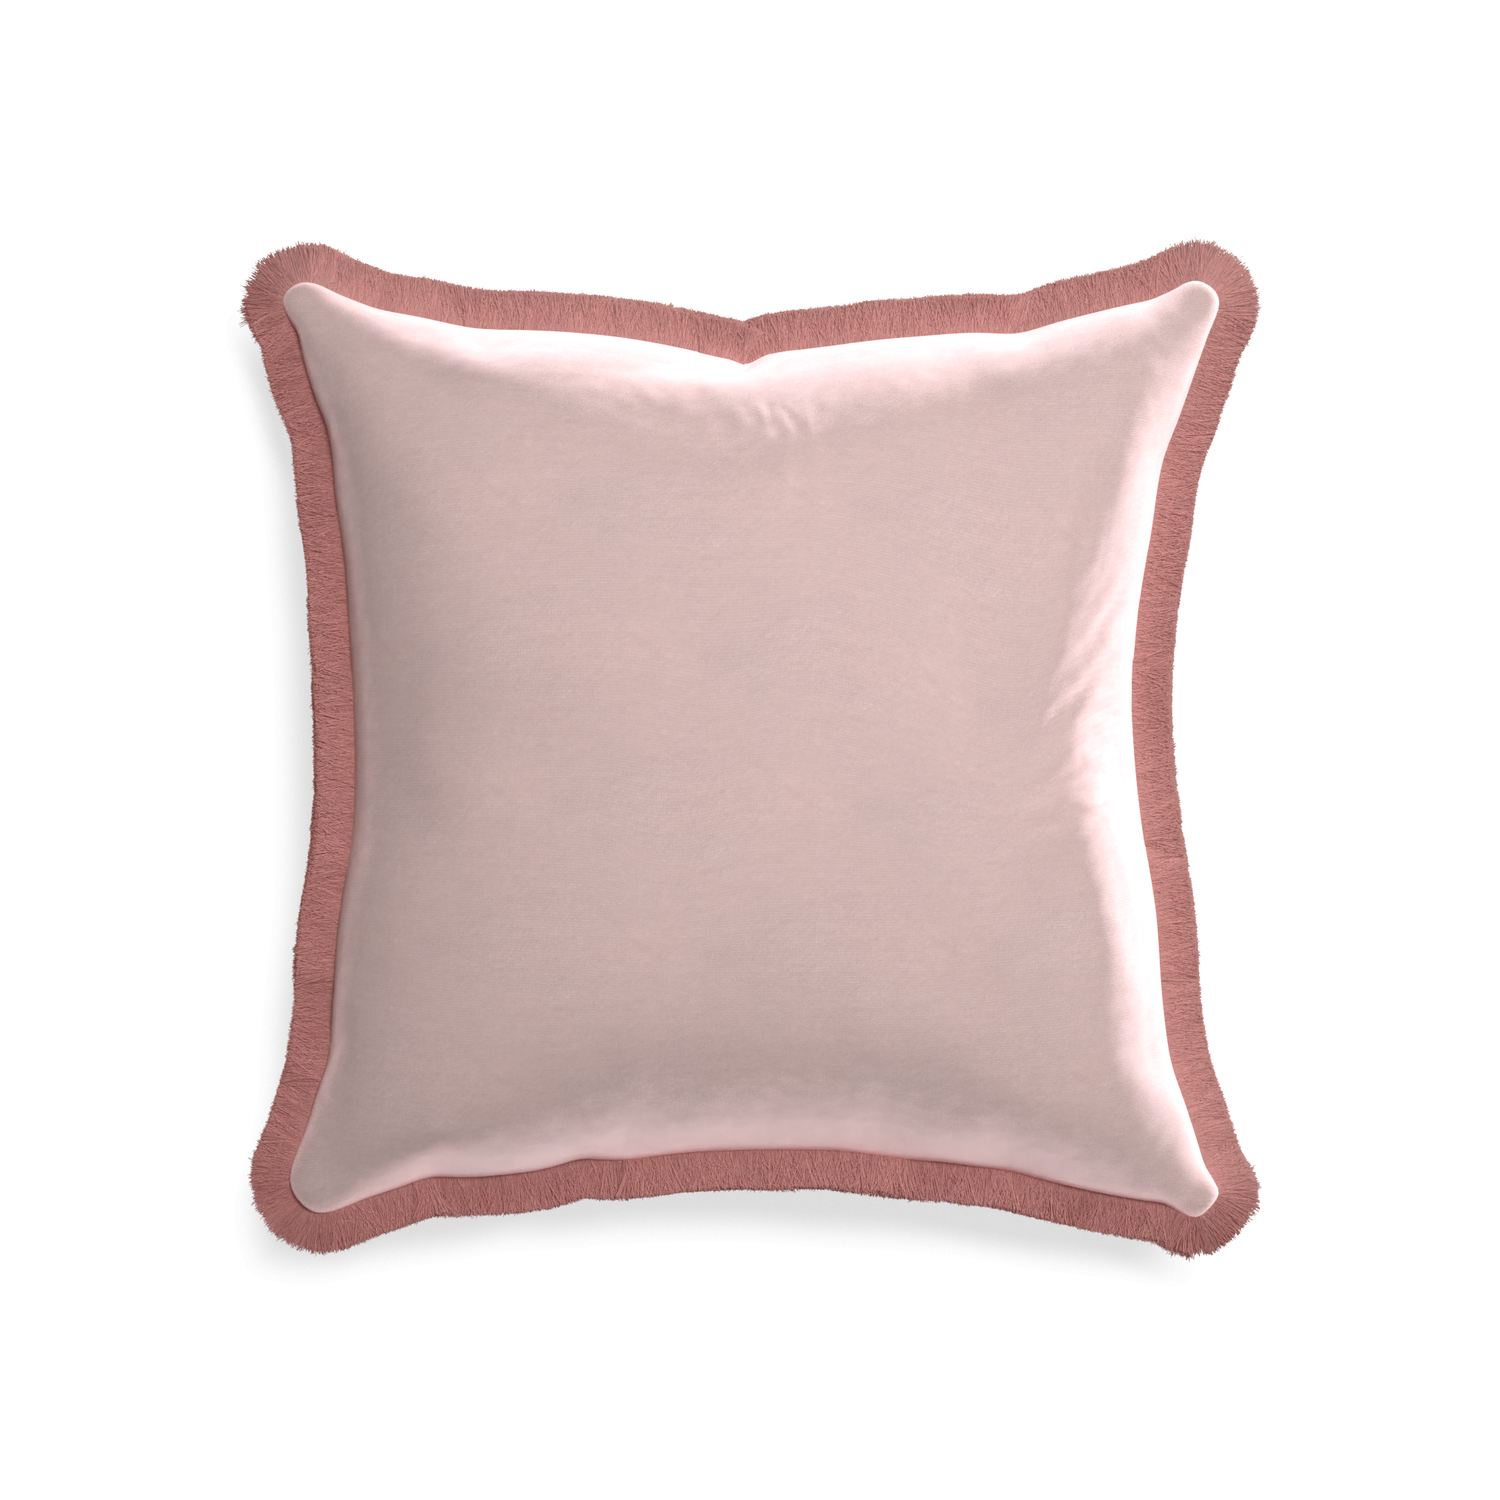 20-square rose velvet custom pillow with d fringe on white background